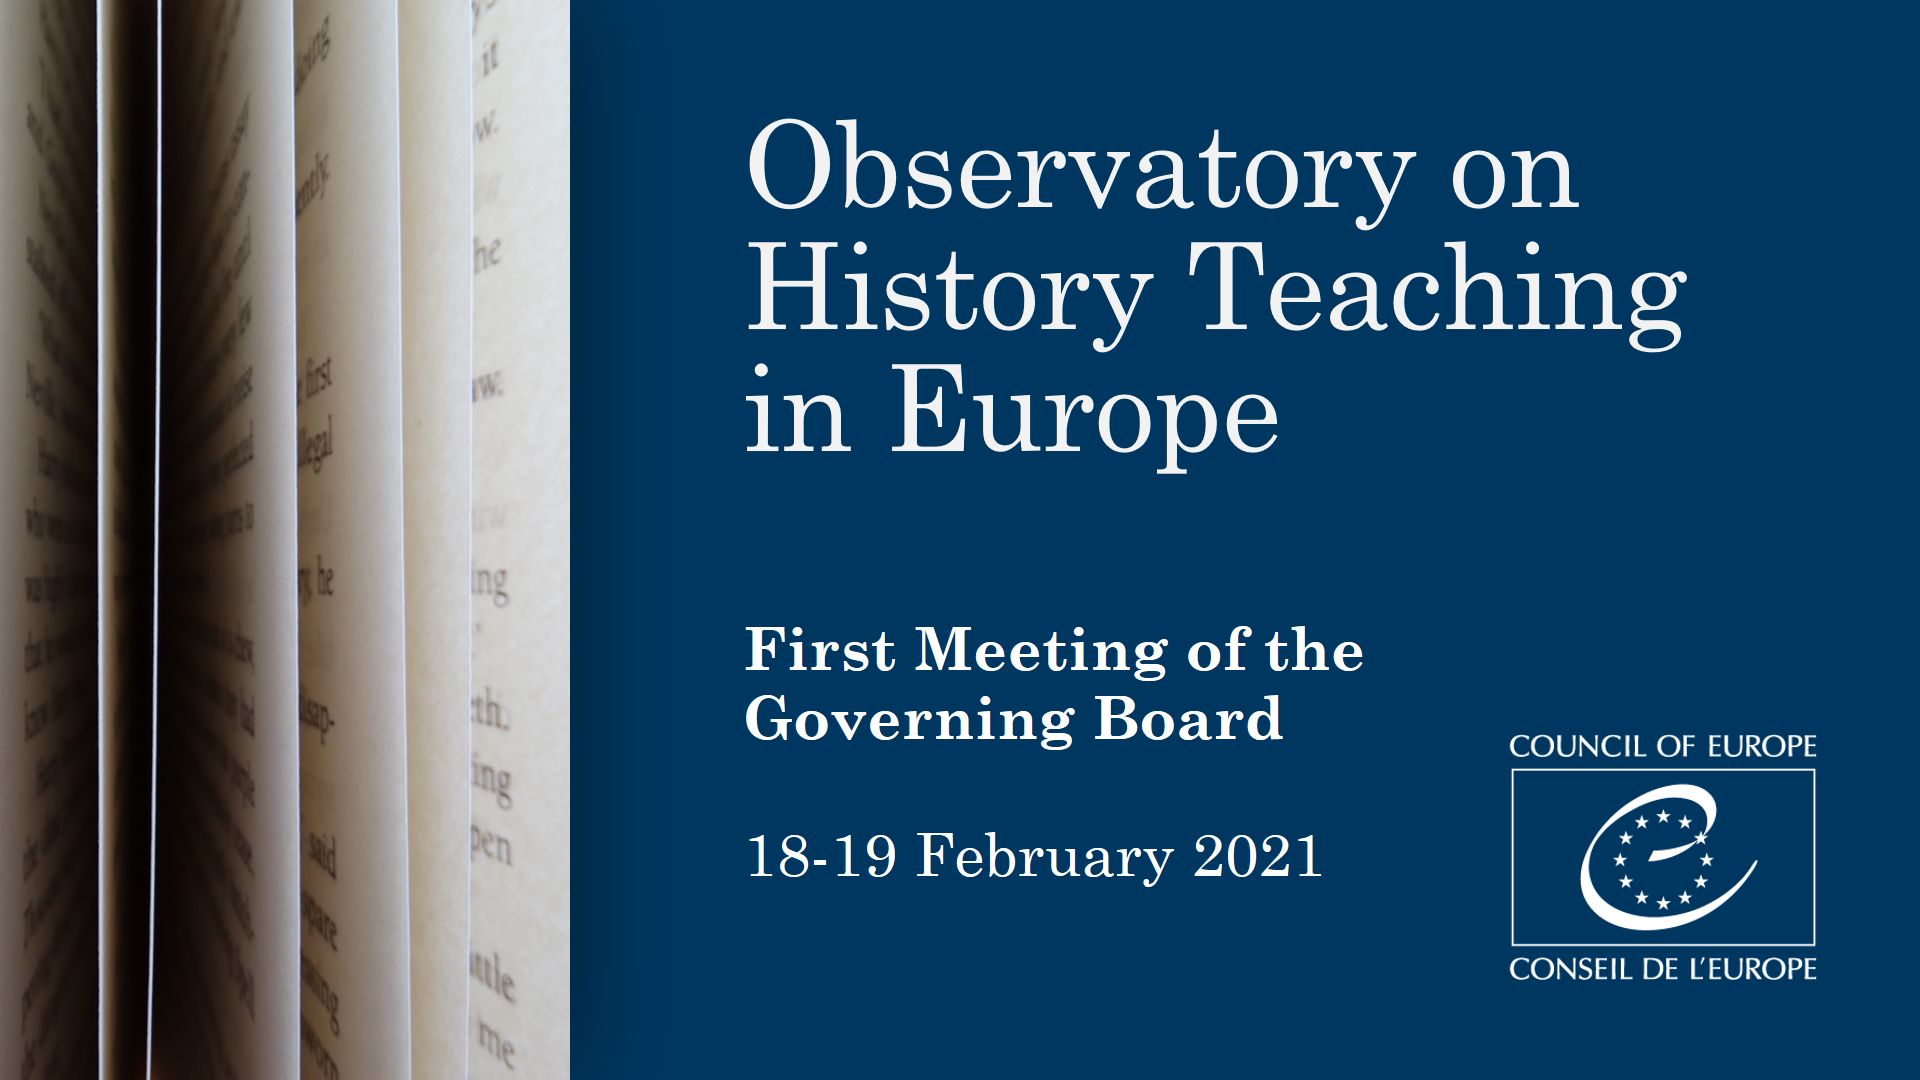 Observatoire de l'enseignement de l'histoire en Europe démarre ses travaux